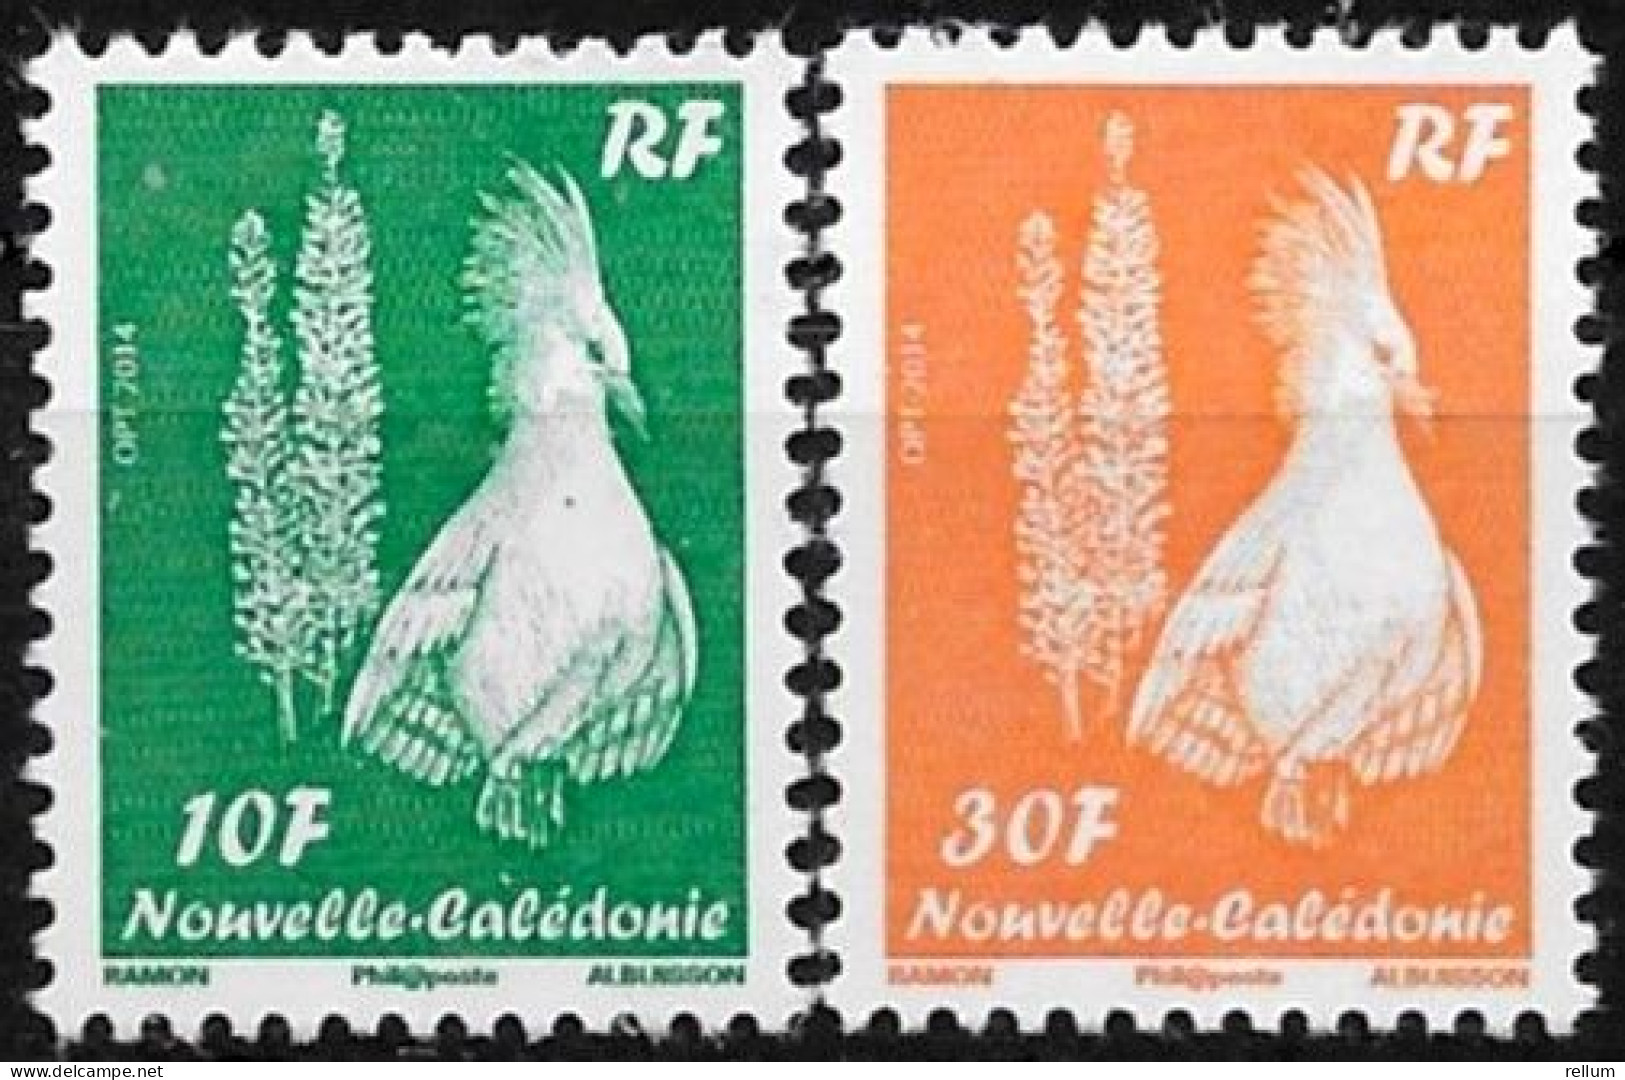 Nouvelle Calédonie 2014 - Yvert Et Tellier Nr. 1233 A/B - Michel Nr. 1507 II, 1562 II ** - Unused Stamps